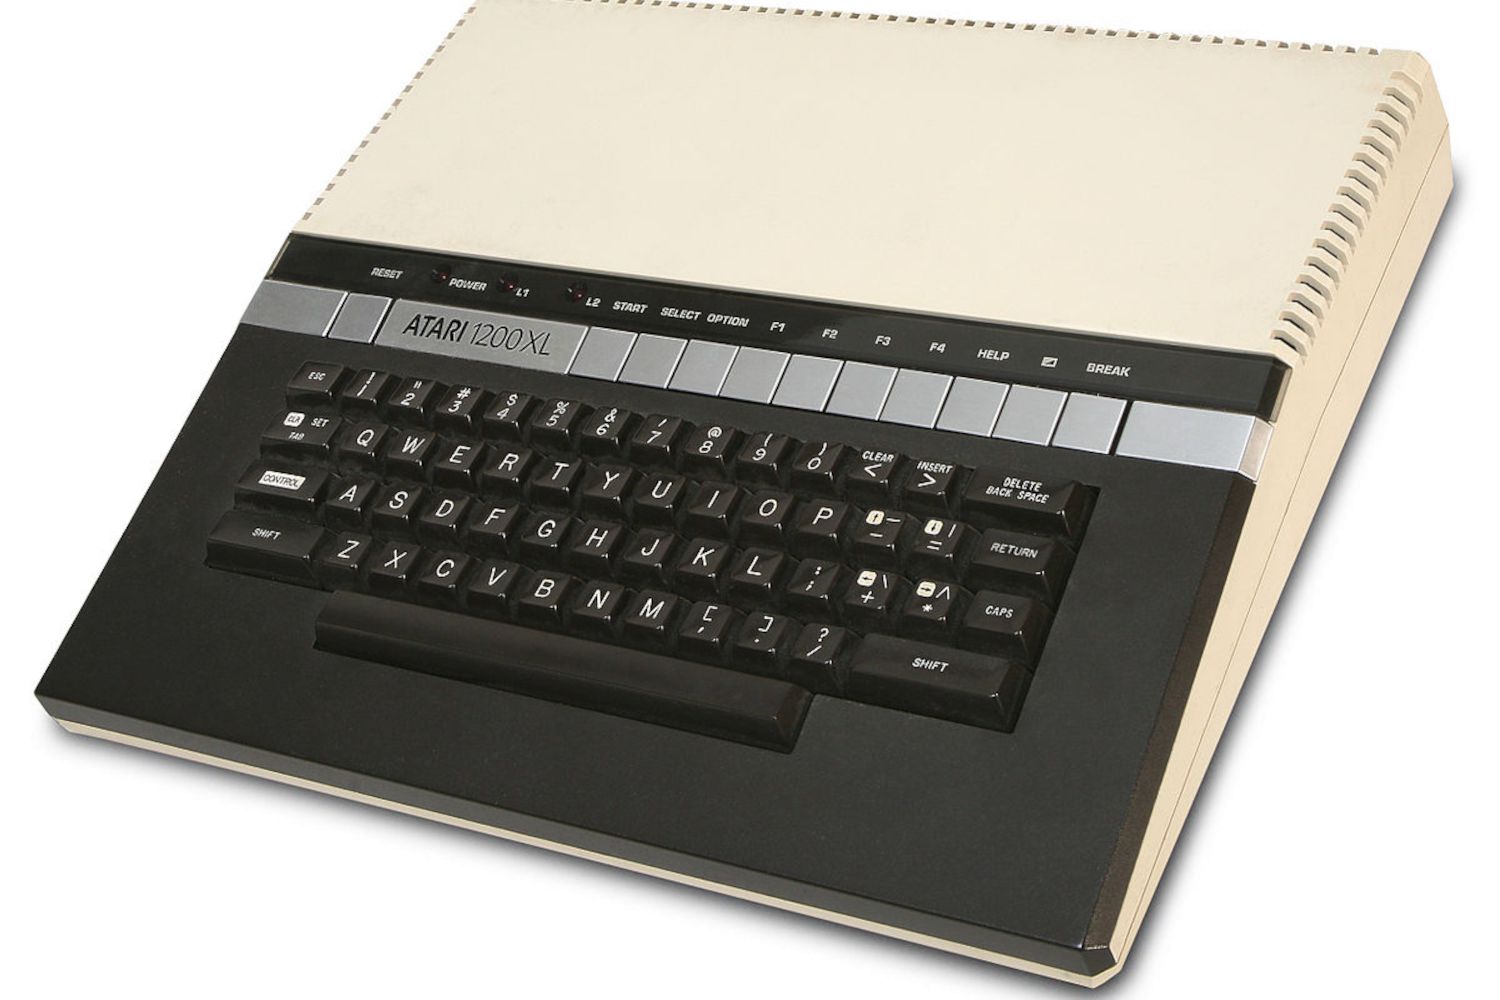 Domácí počítač Atari 1200XL při pohledu shora